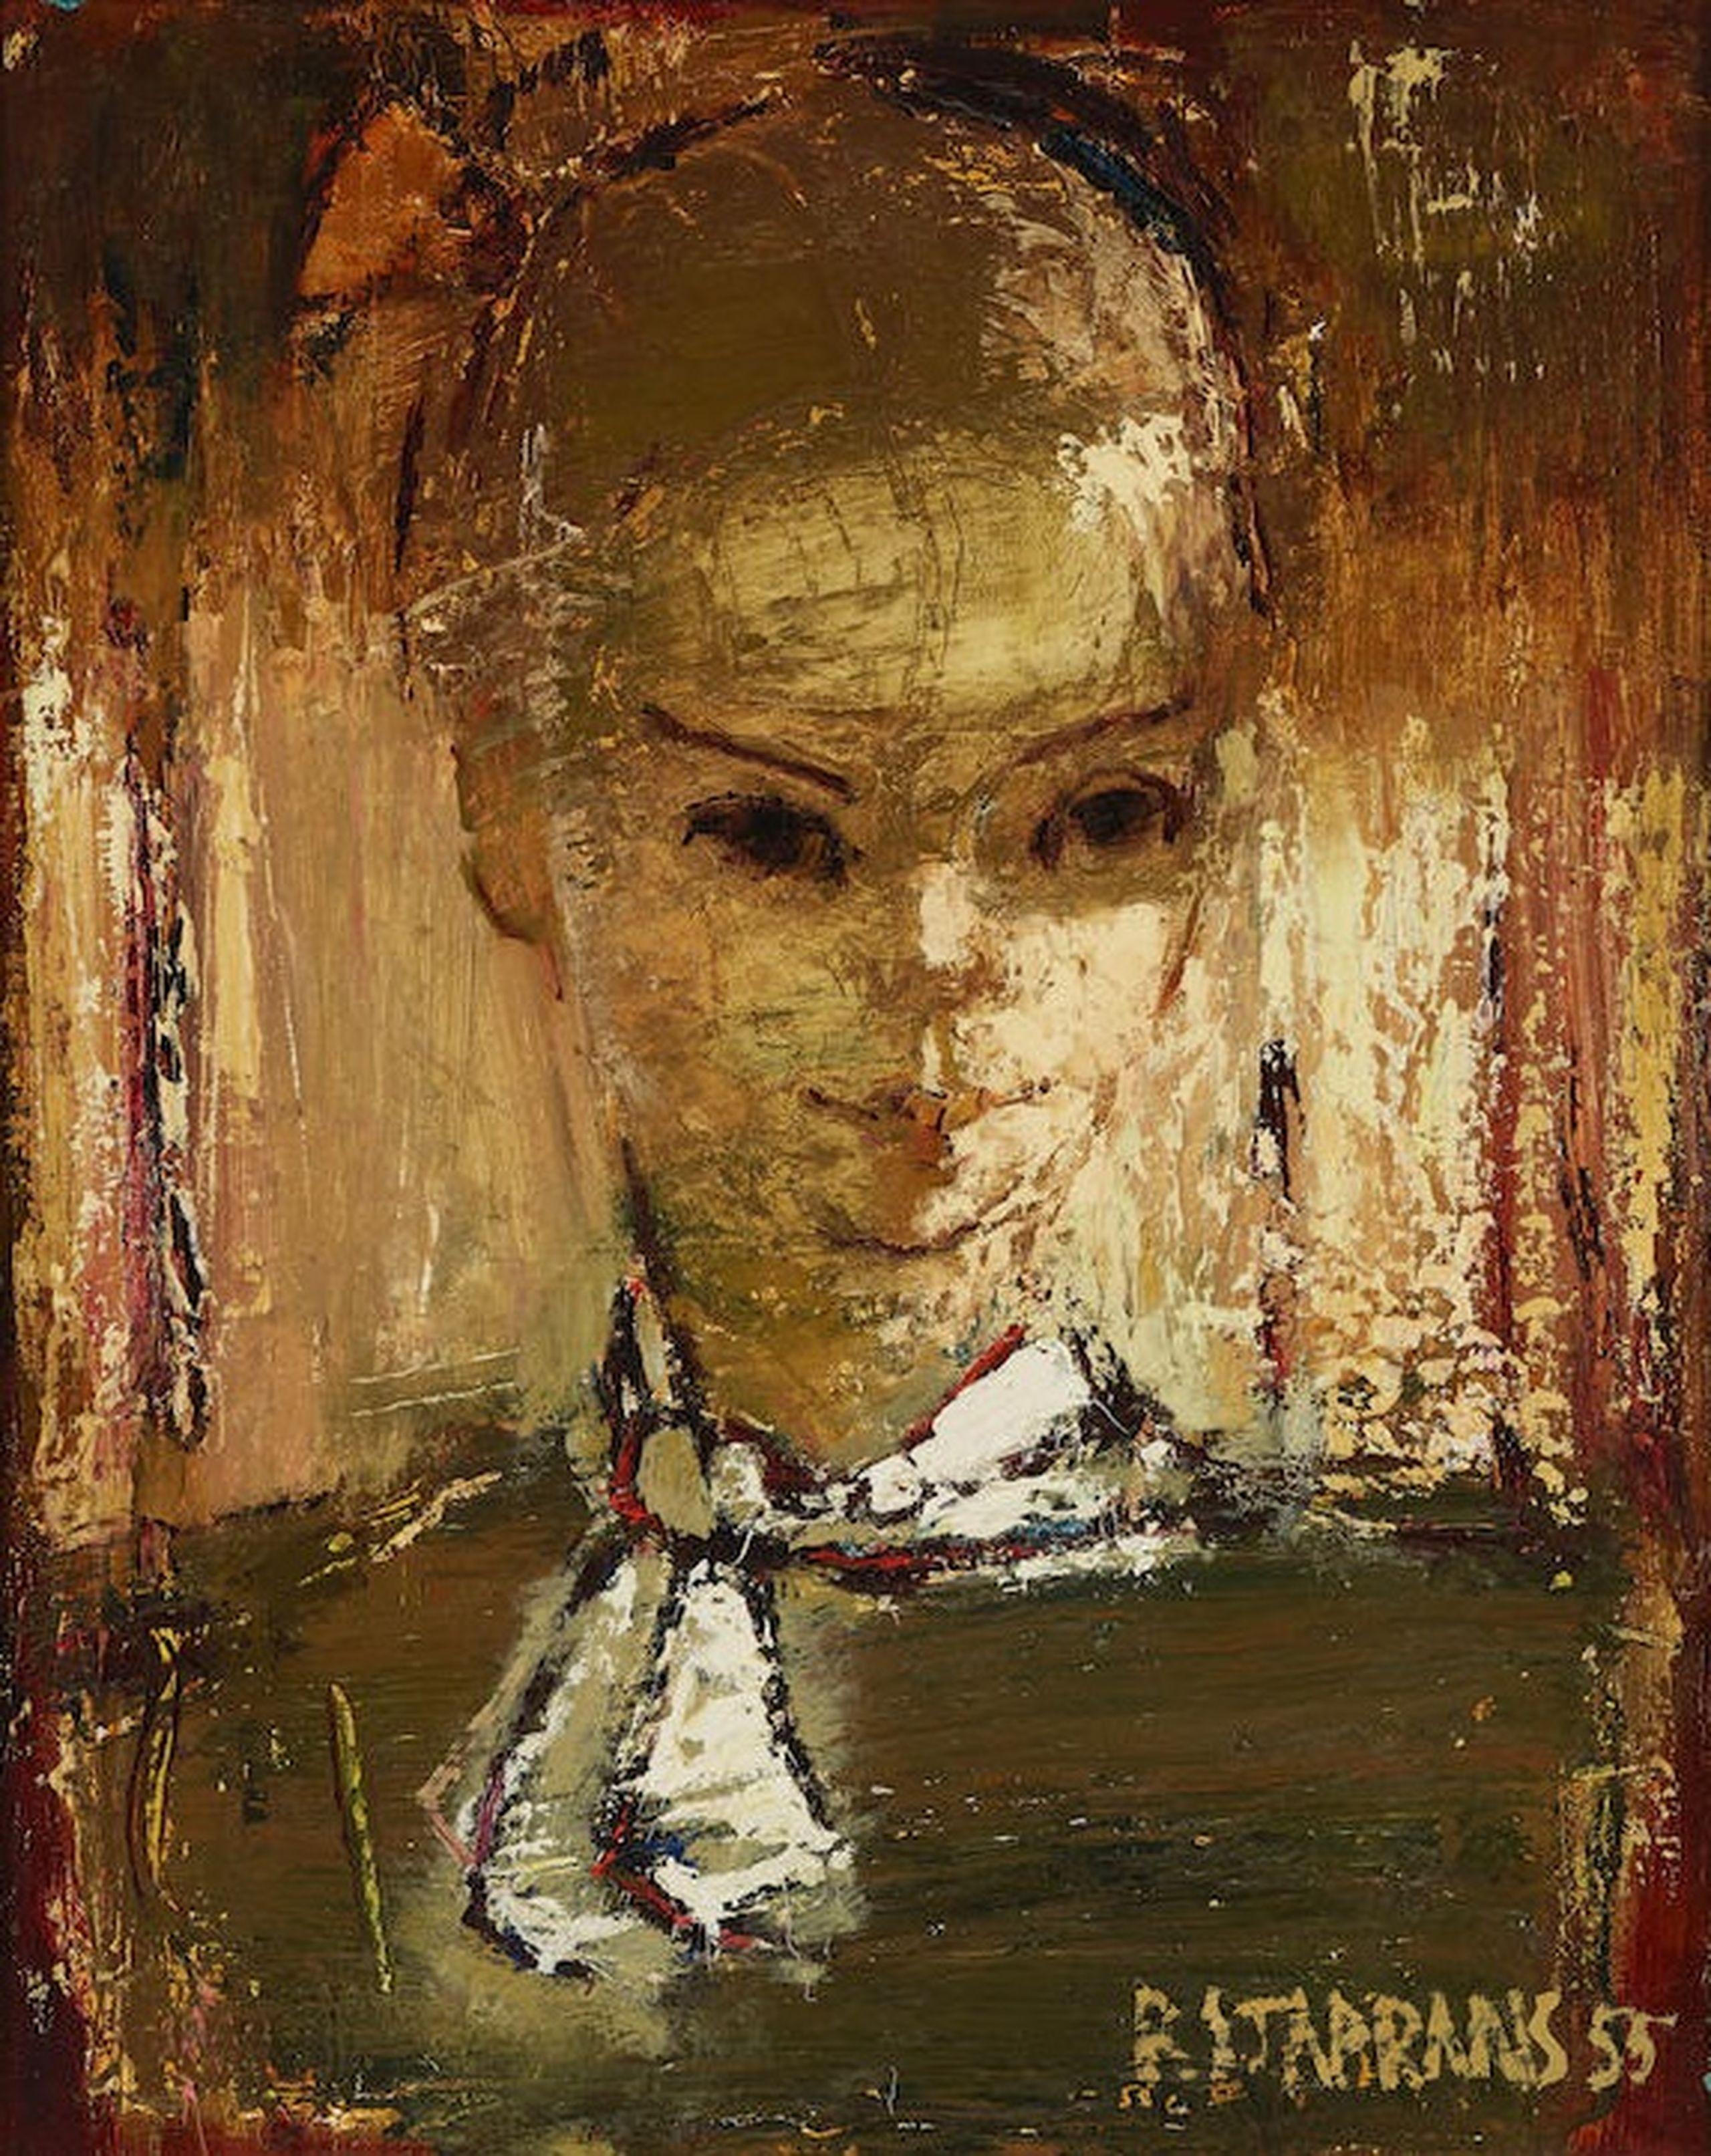 Raimonds Staprаns  Portrait Painting – Frauenporträt, 1955, Öl auf Leinwand, 50,8 x 40,6 cm